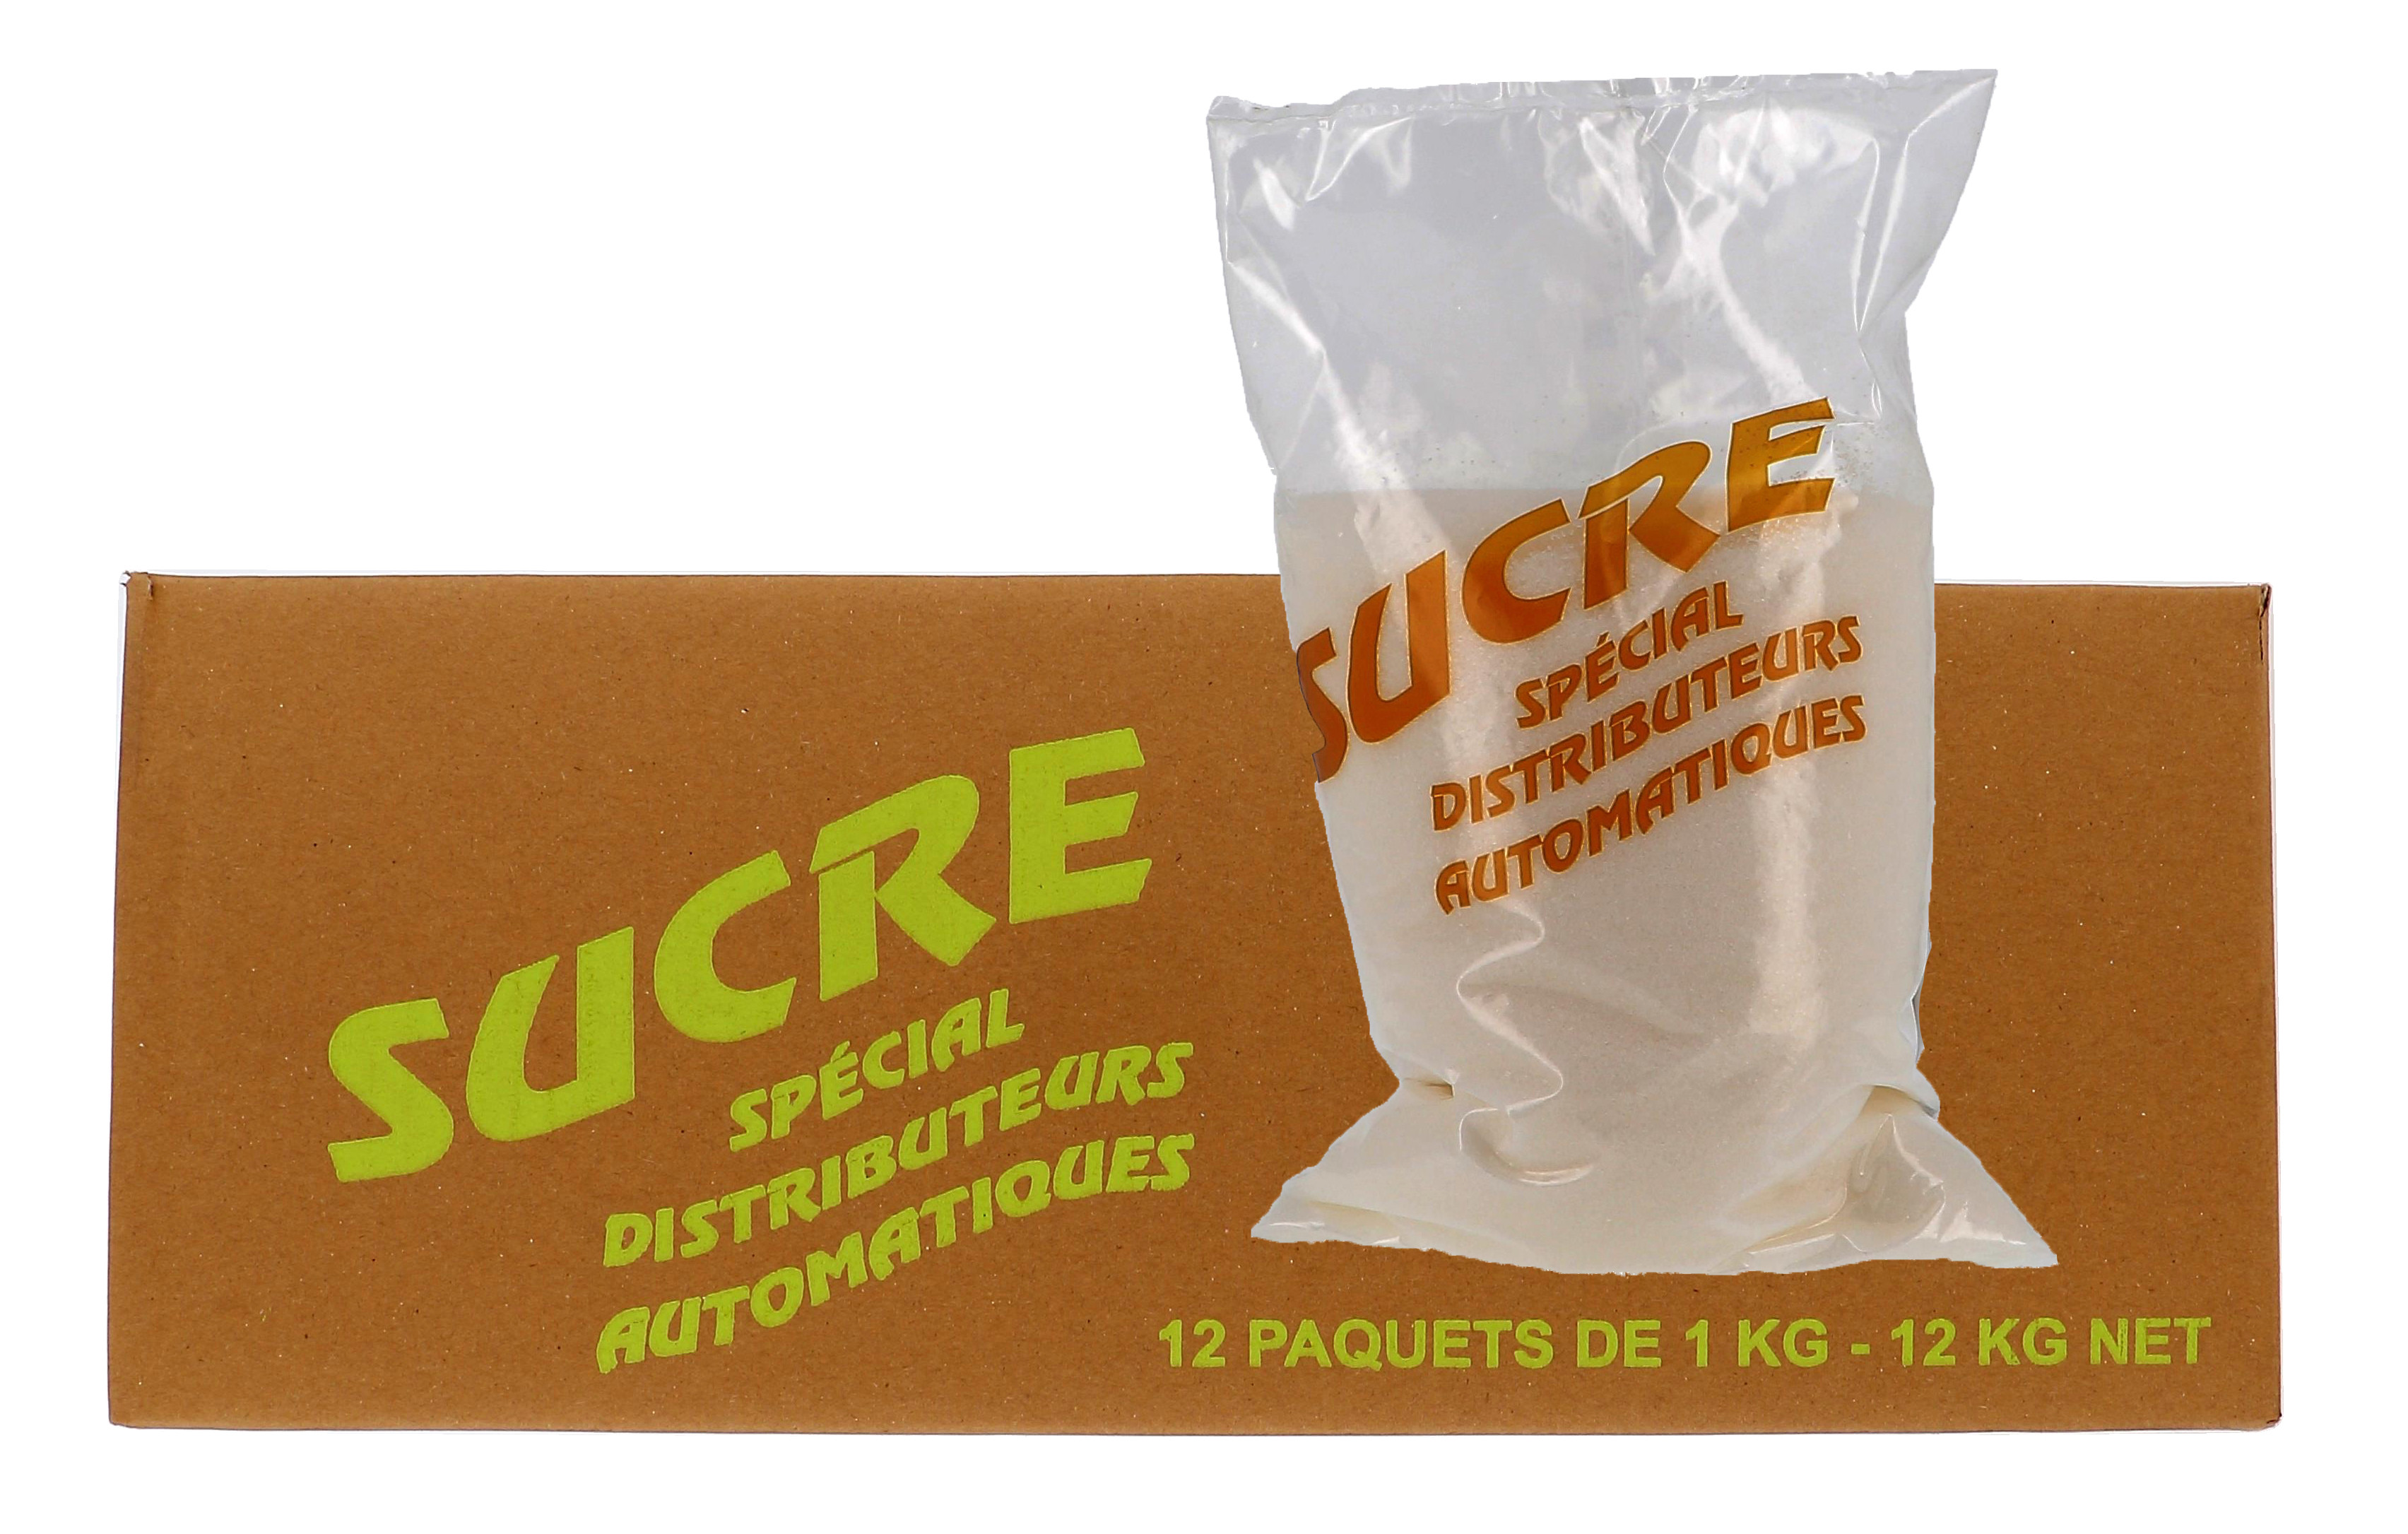 Sucre Special Distributeurs Automatique 12x1kg (Suiker)